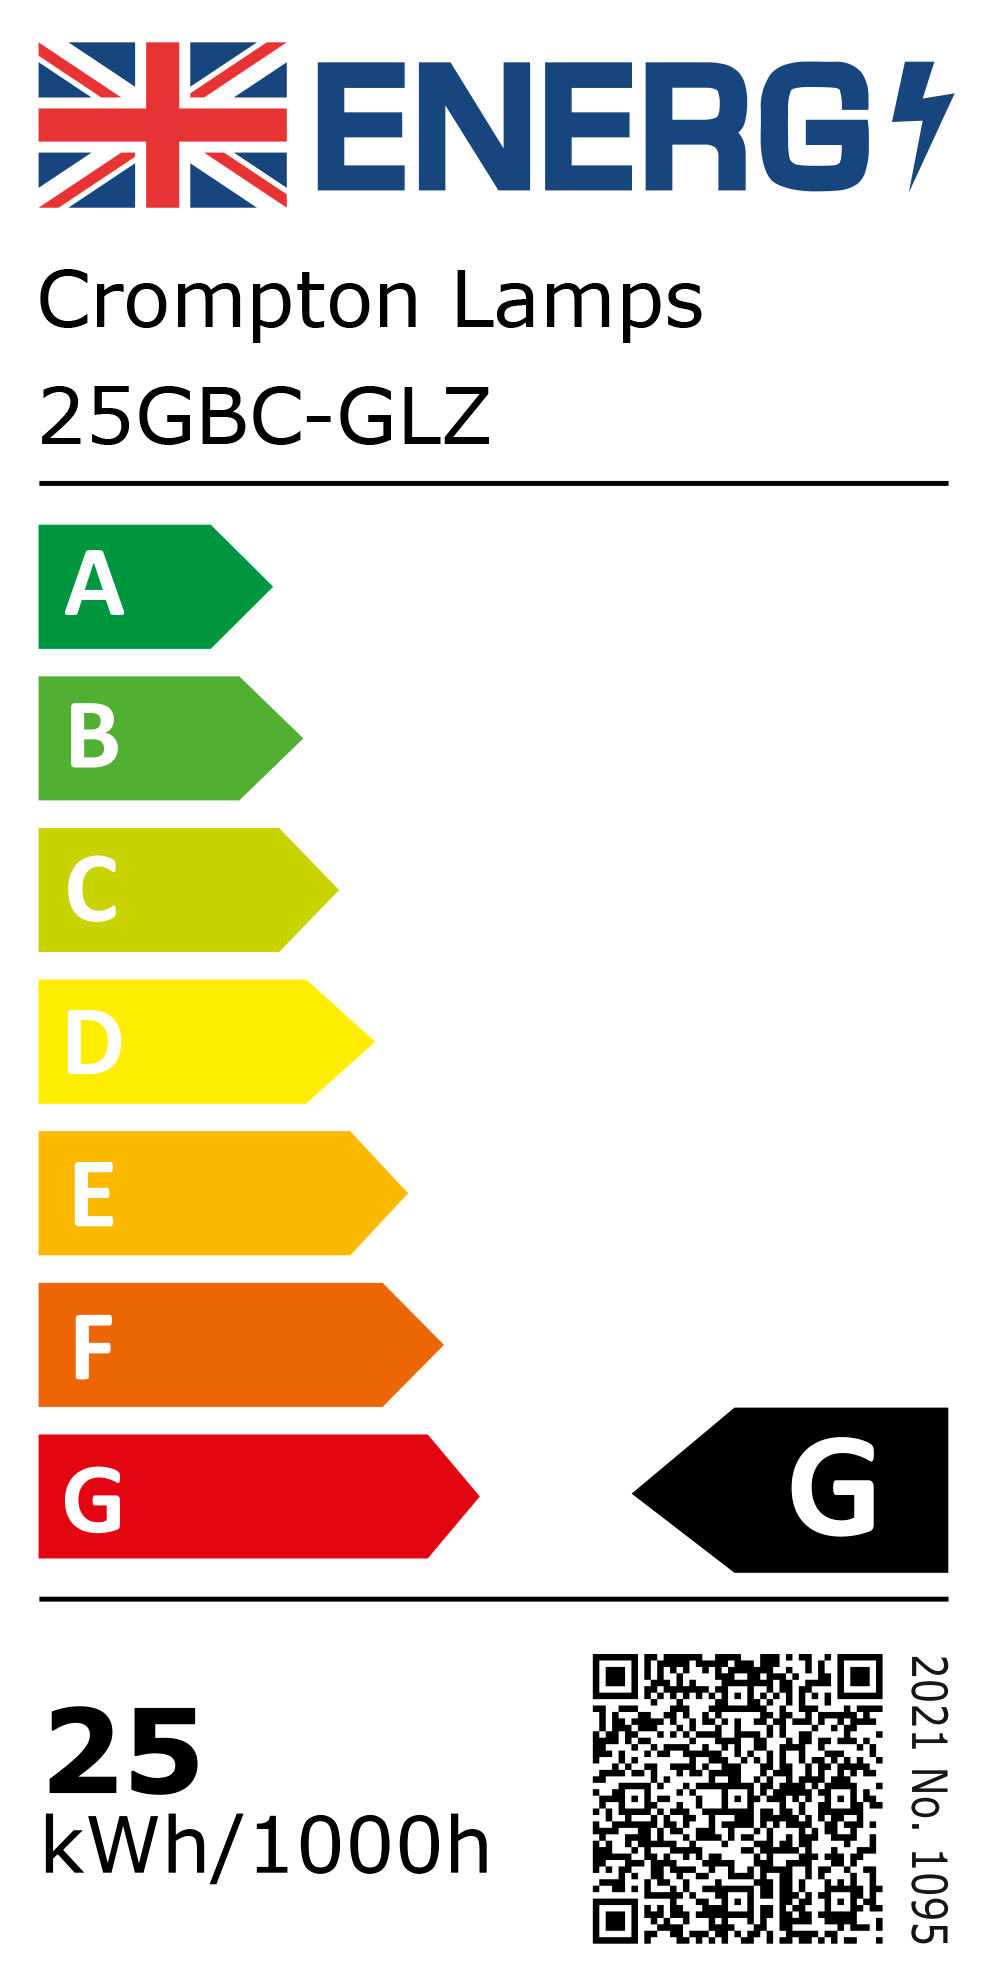 New 2021 Energy Rating Label: Stock Code 25GBC-GLZ